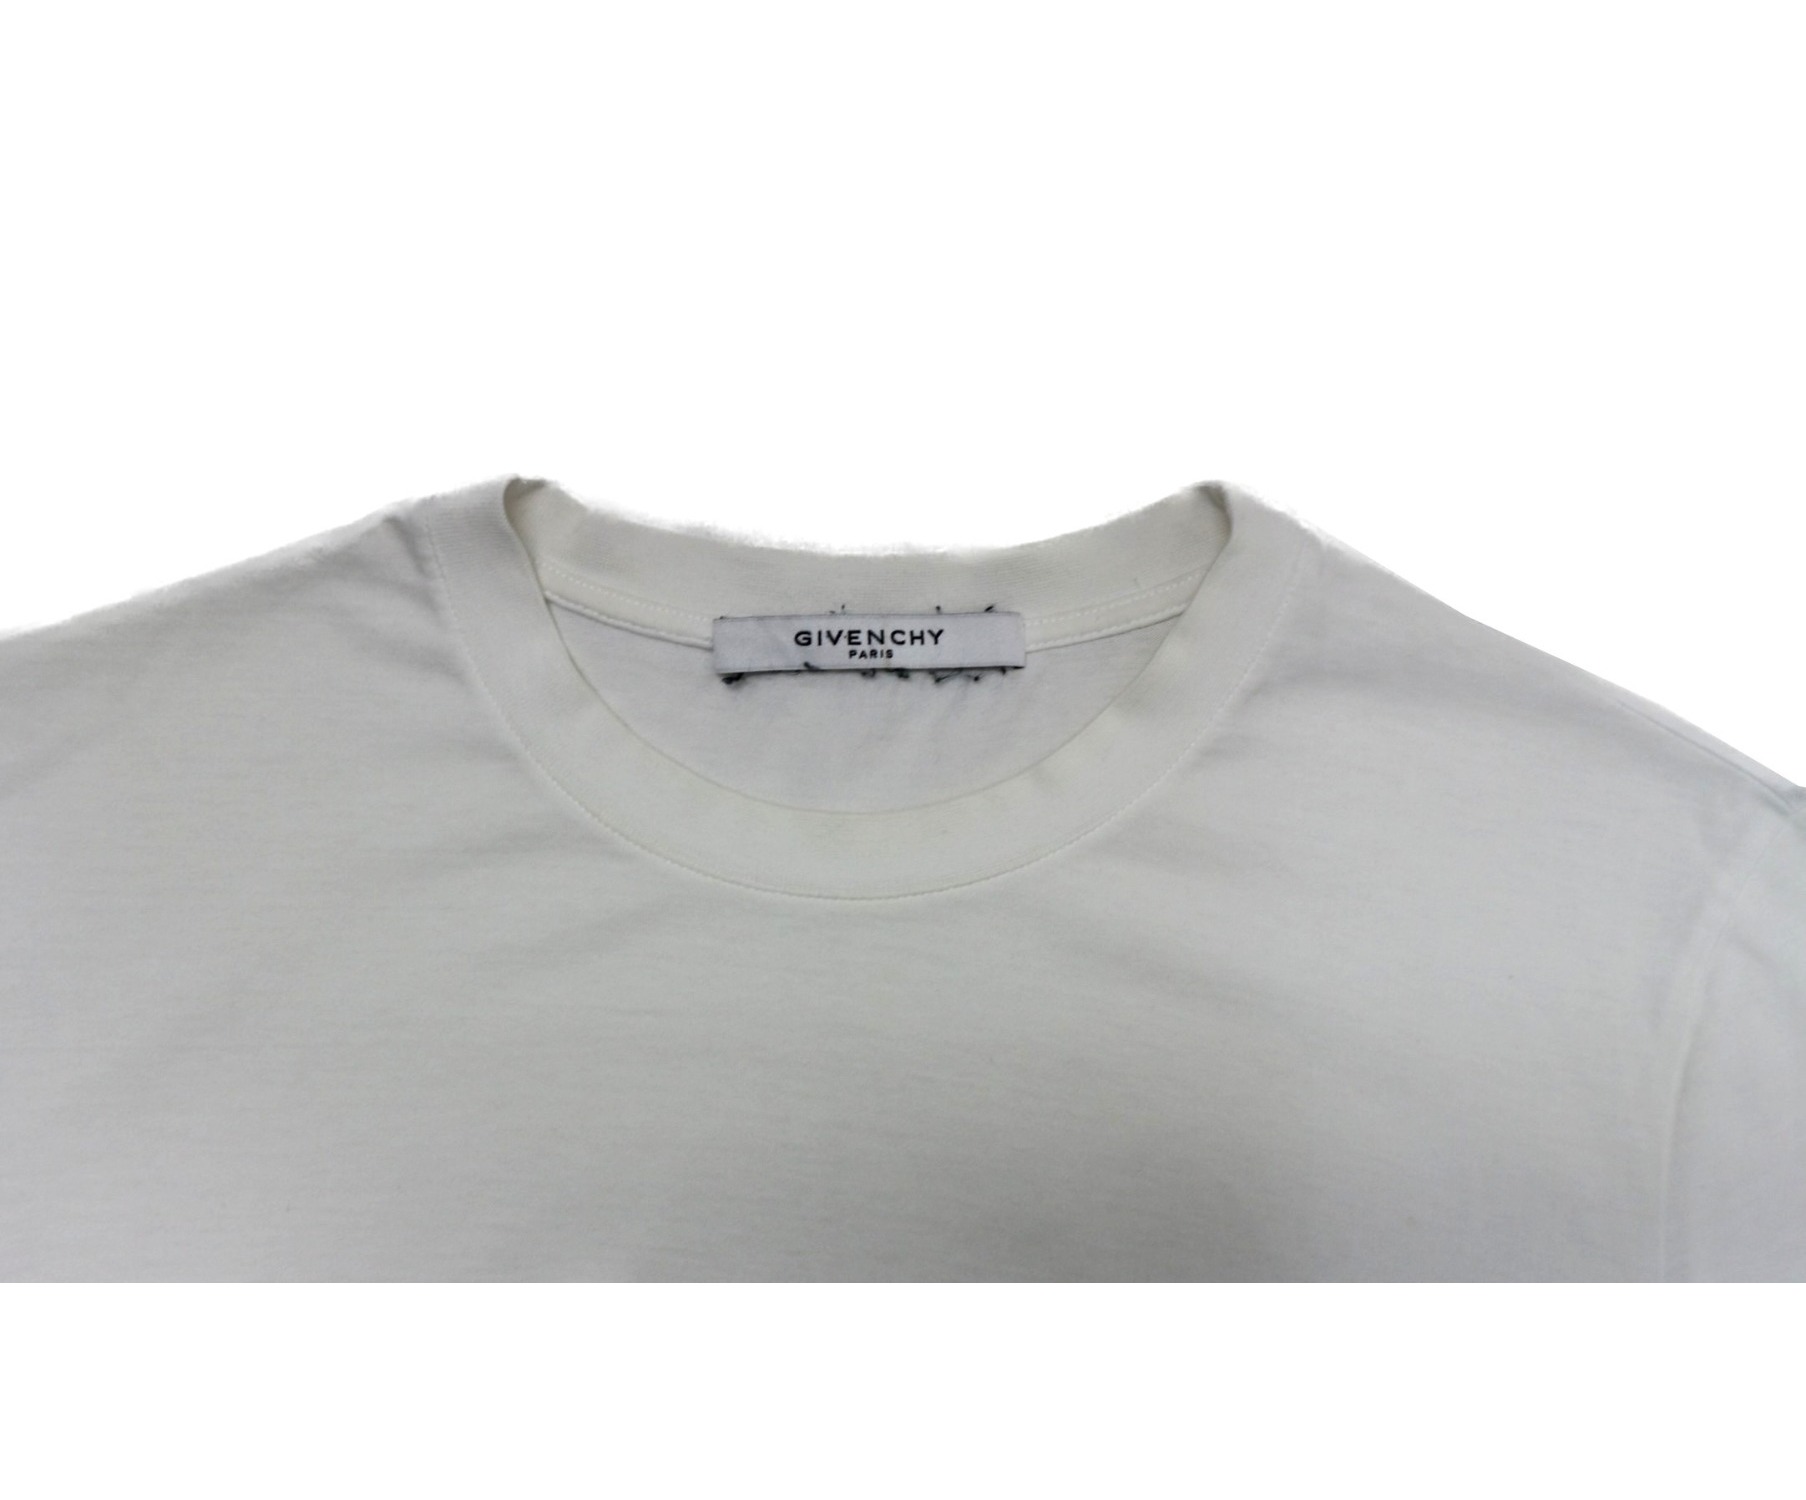 GIVENCHY (ジバンシィ) ヴィンテージロゴTシャツ ホワイト サイズ:S